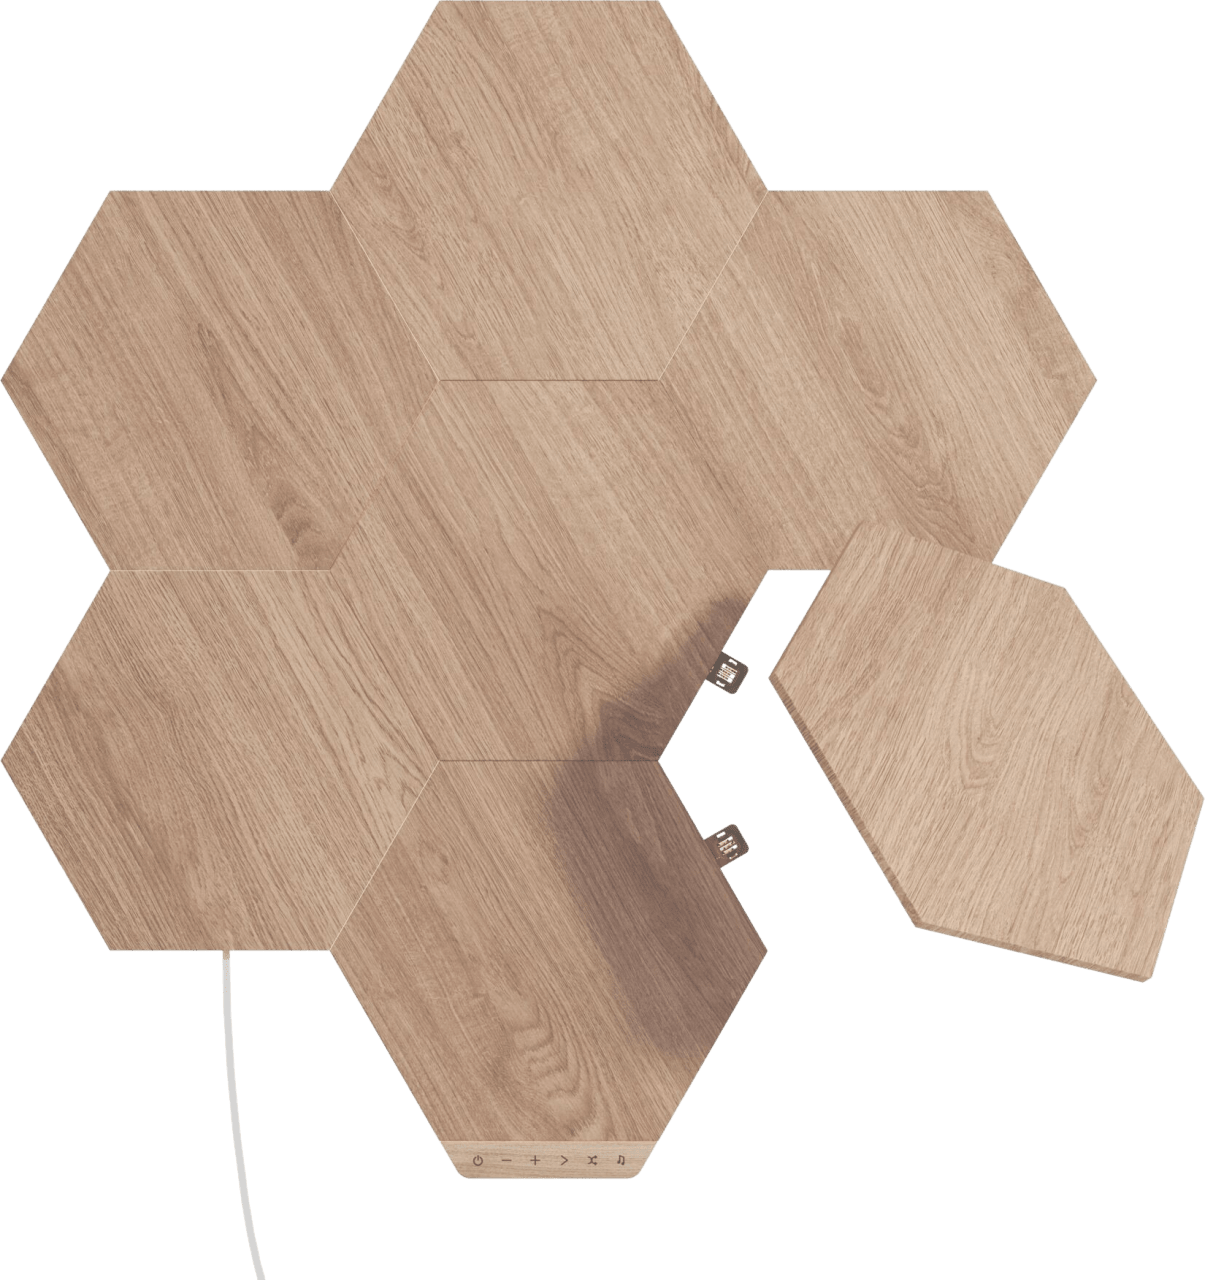 Madera Nanoleaf Elements - Kit básico de hexágonos con apariencia de madera, 7 piezas.1